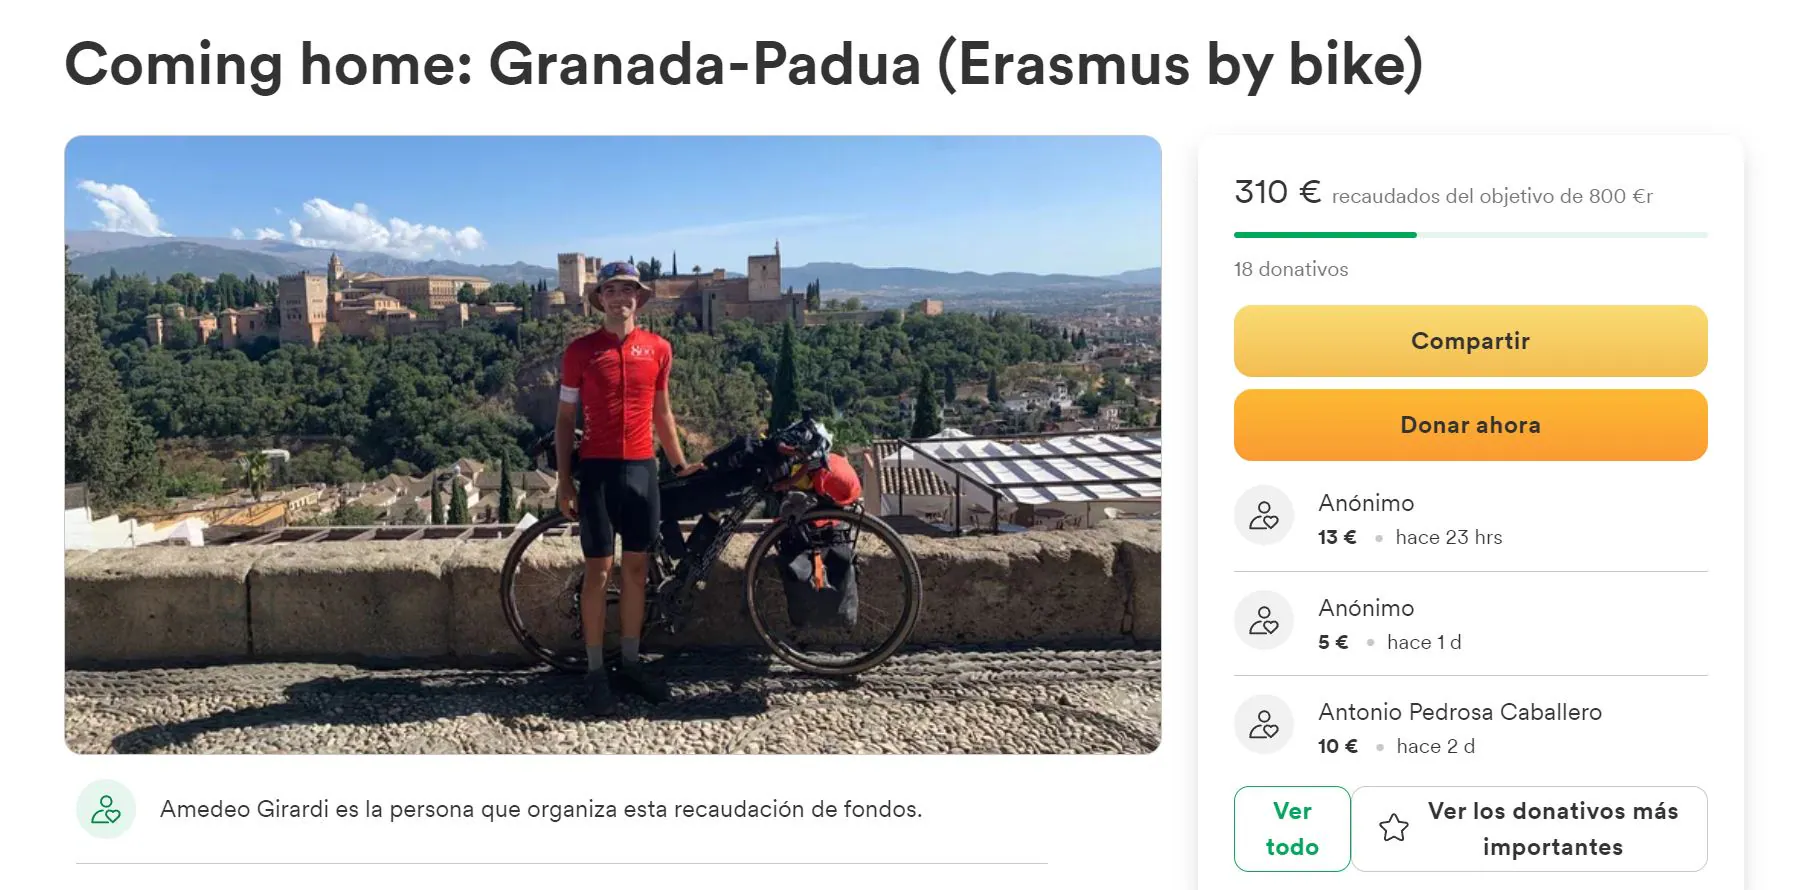 El italiano que viajó hasta su Erasmus en Granada en bicicleta lanza un crowdfunding para volver a casa